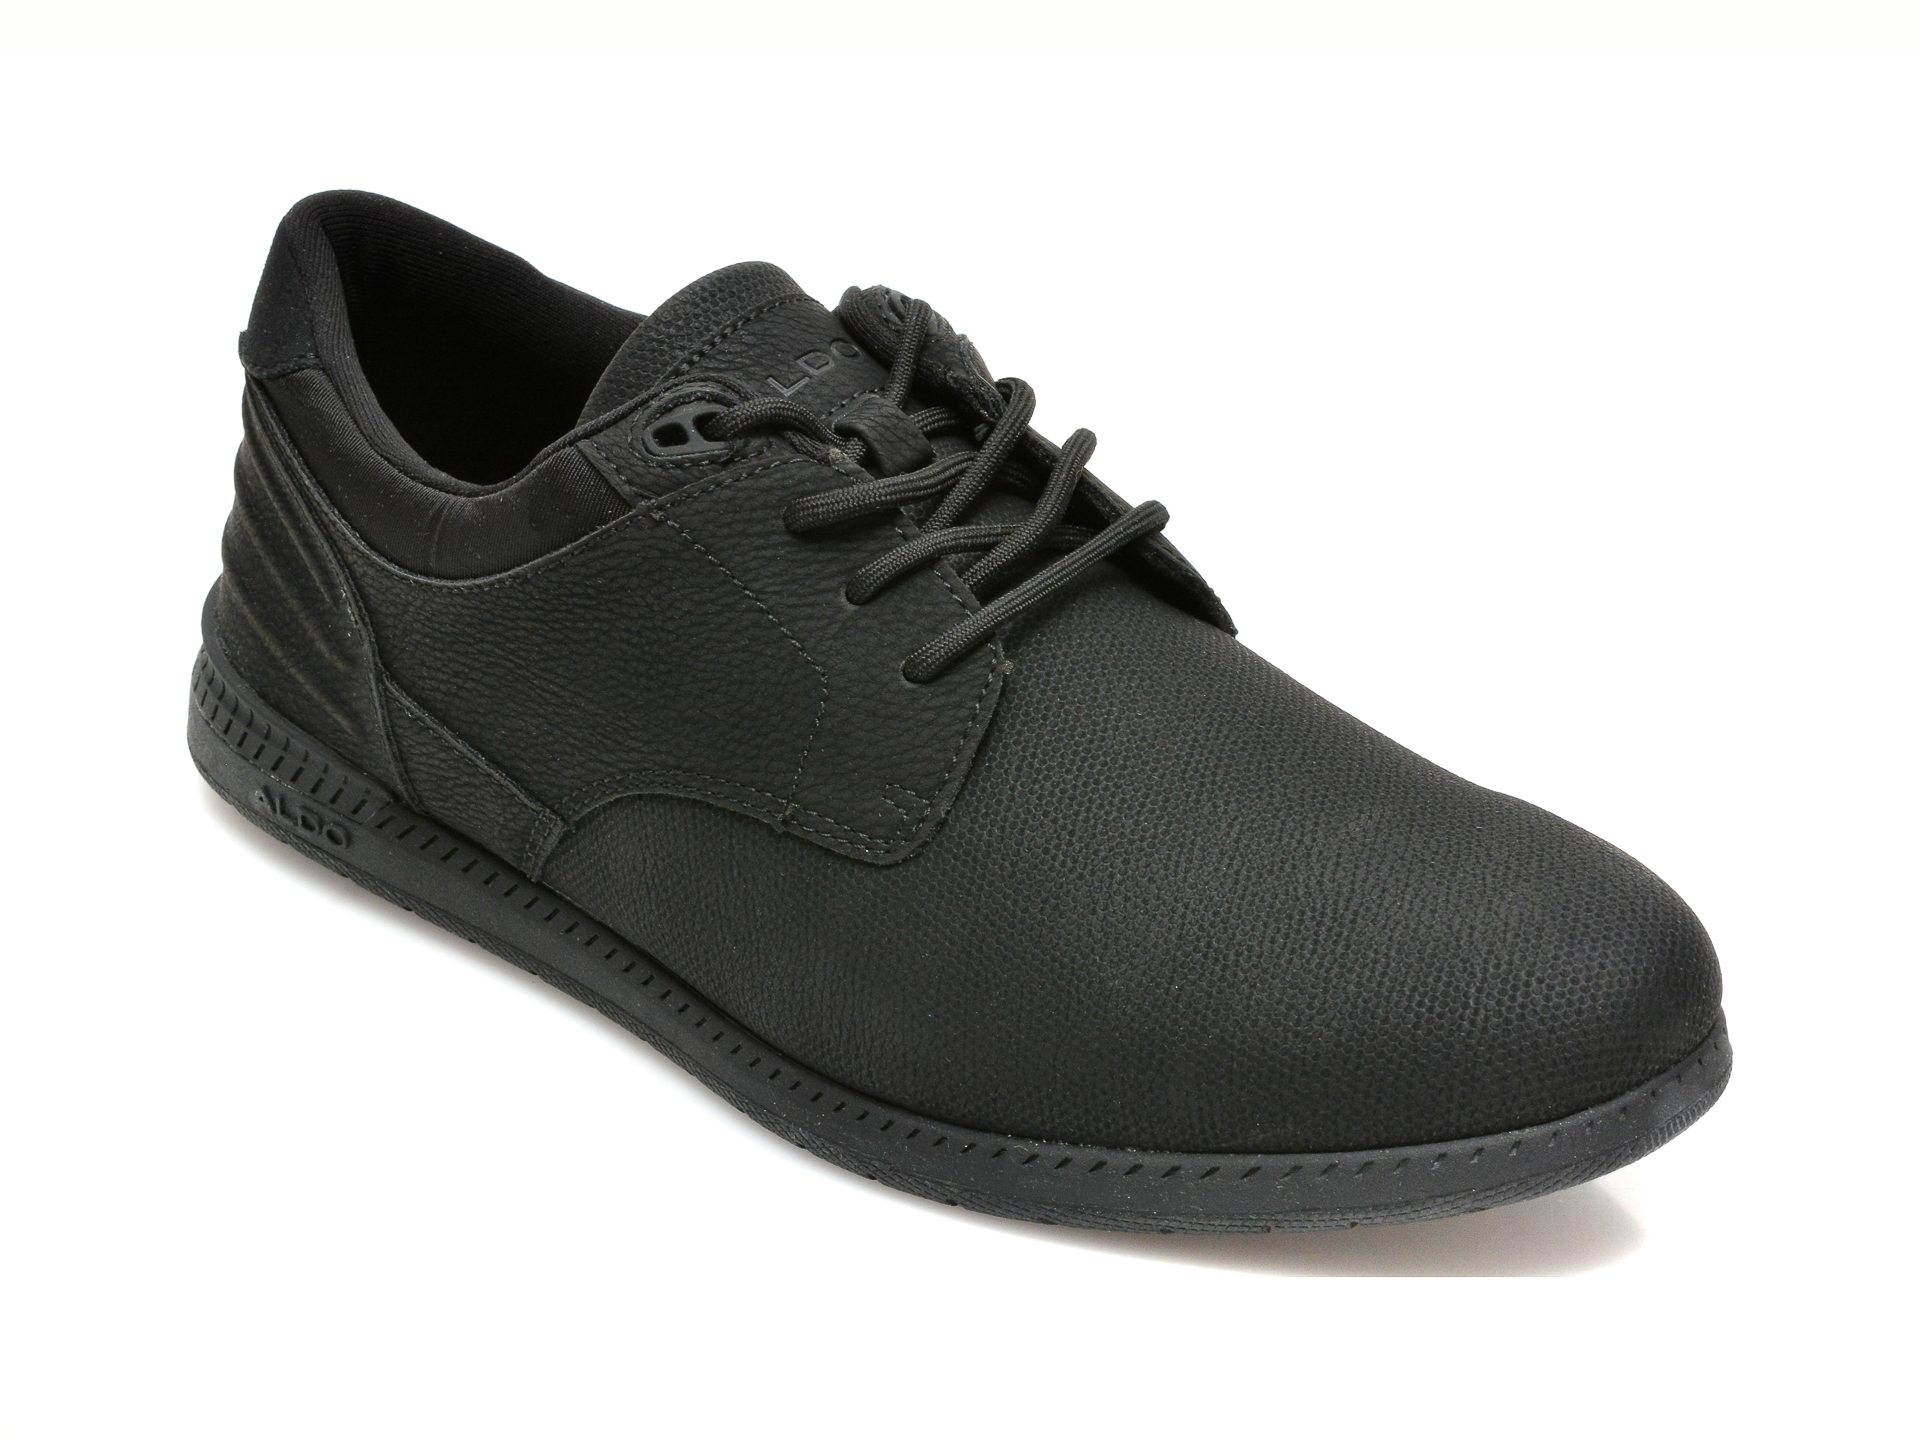 Pantofi ALDO negri, DINBREN001, din piele ecologica Aldo